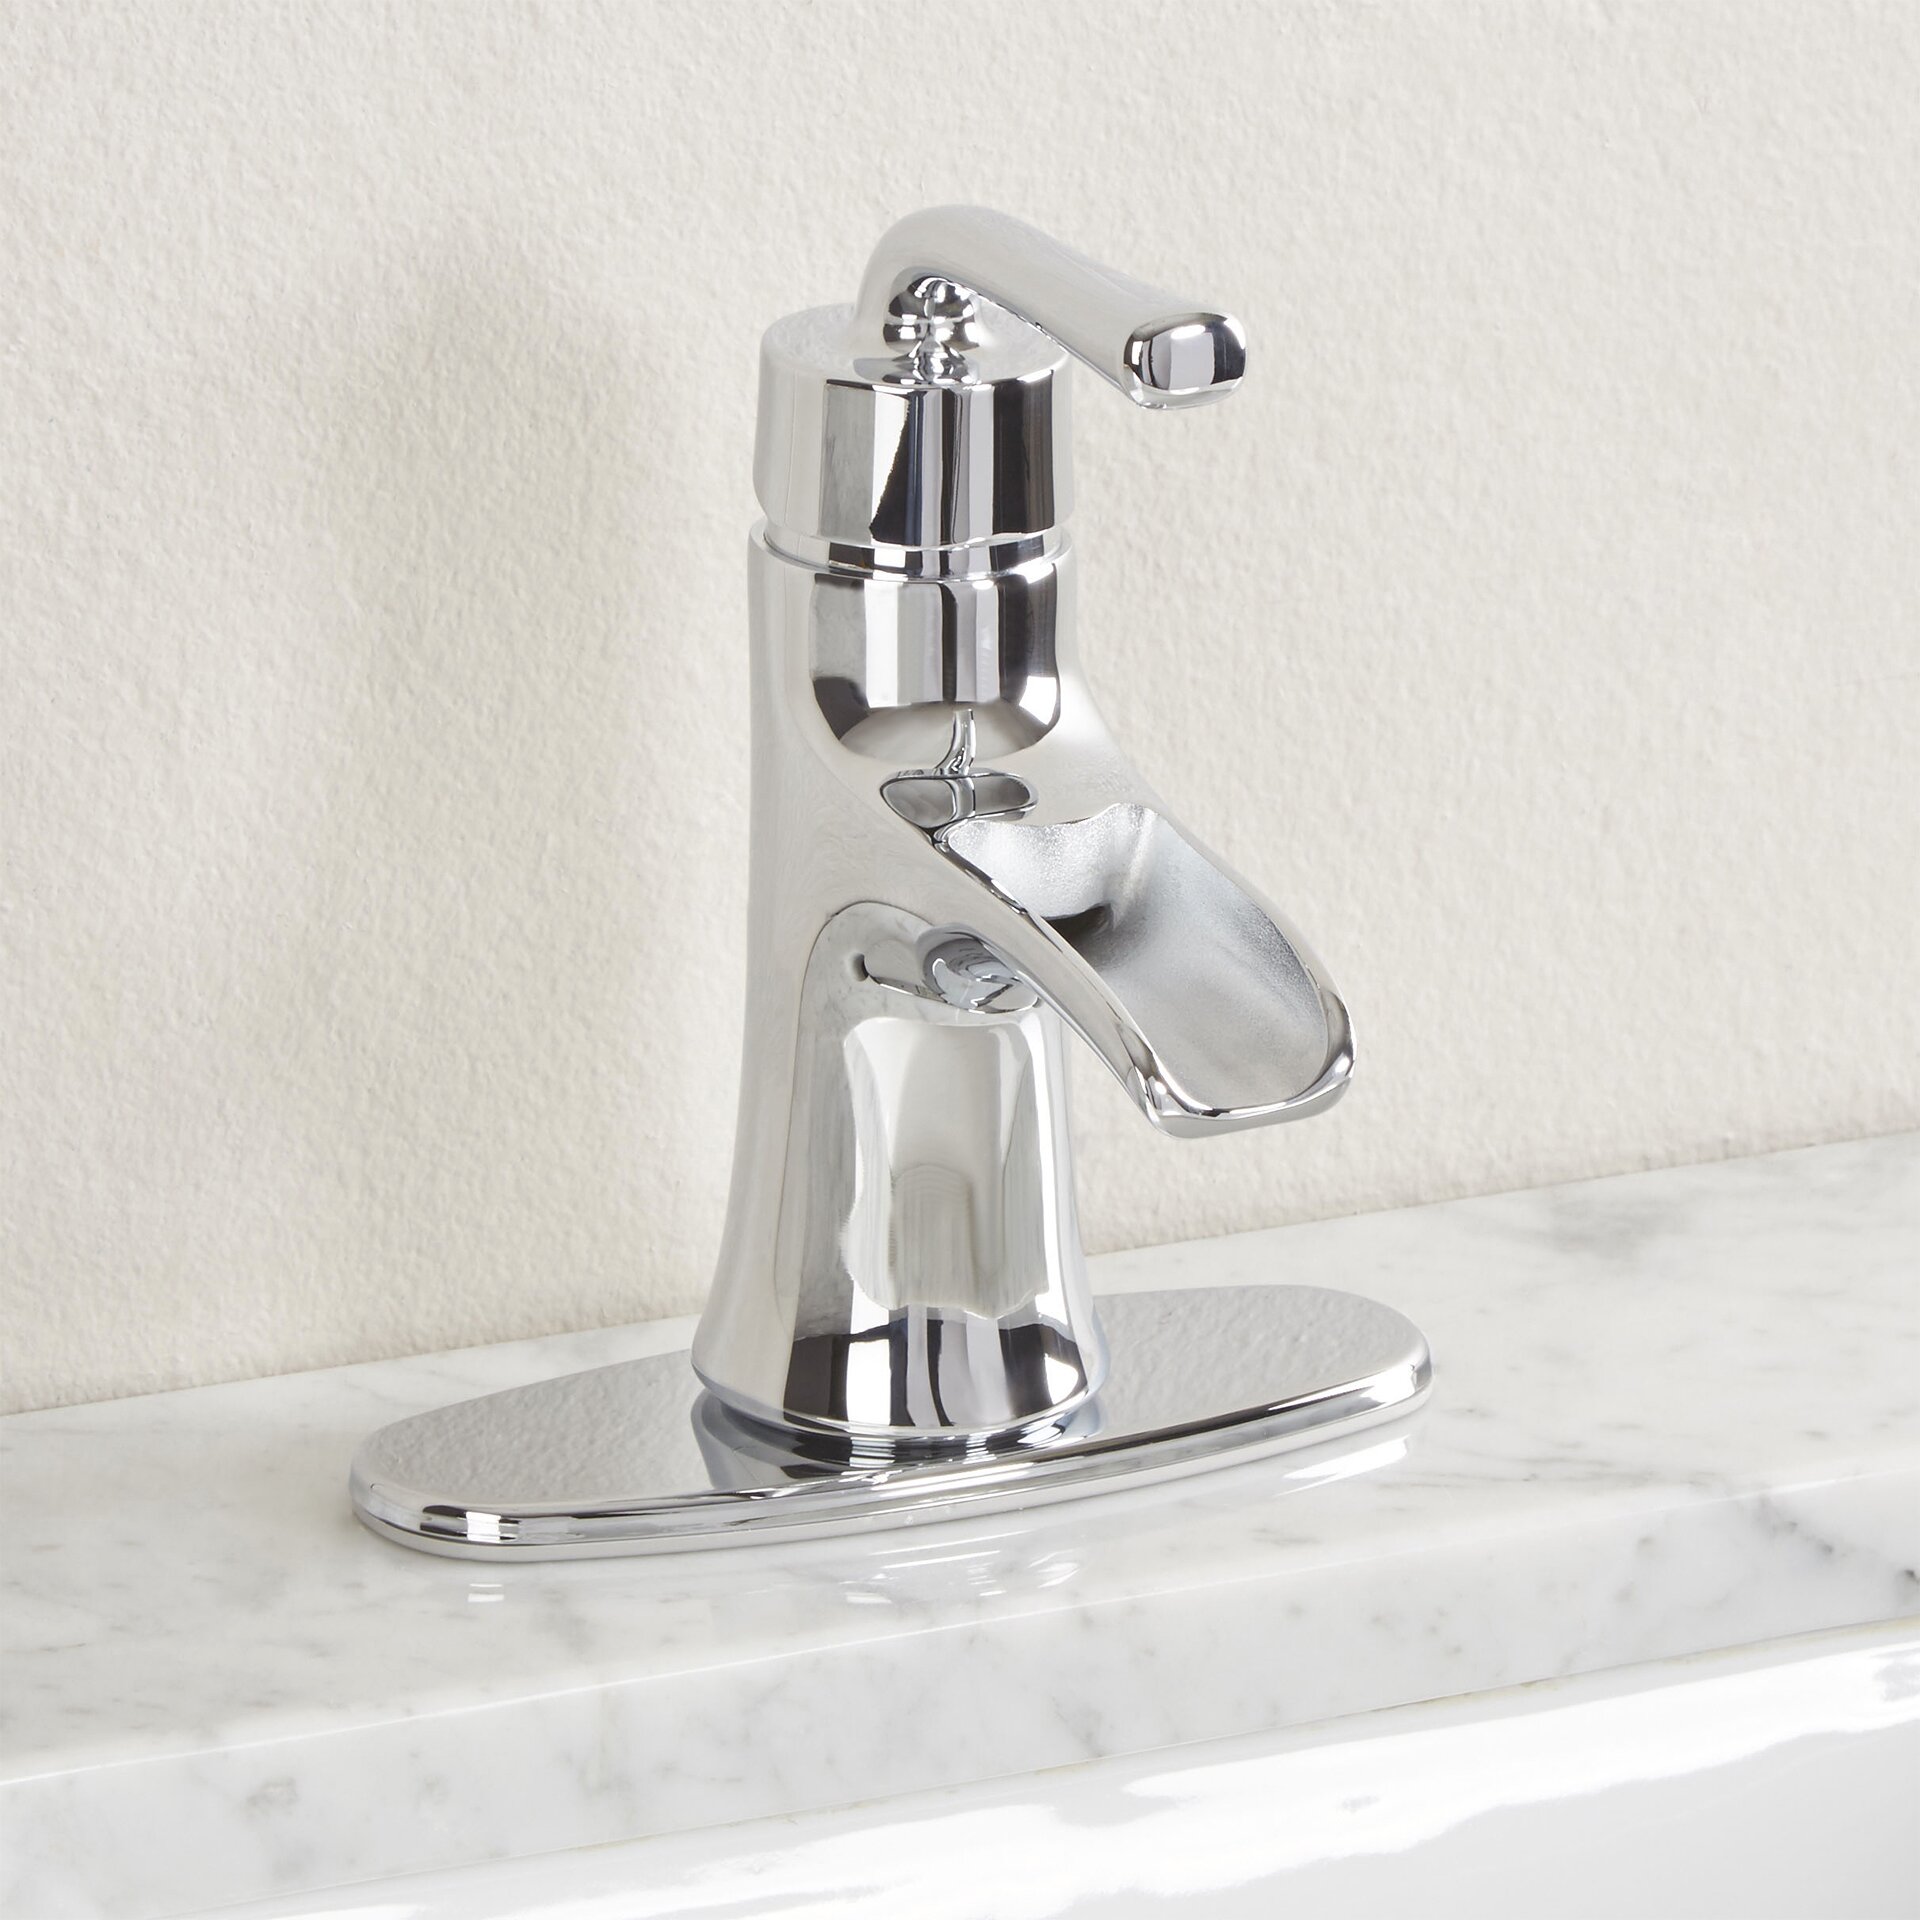 Premier Faucet Sanibel Single Handle Bathroom Faucet & Reviews ...  Premier Faucet Sanibel Single Handle Bathroom Faucet